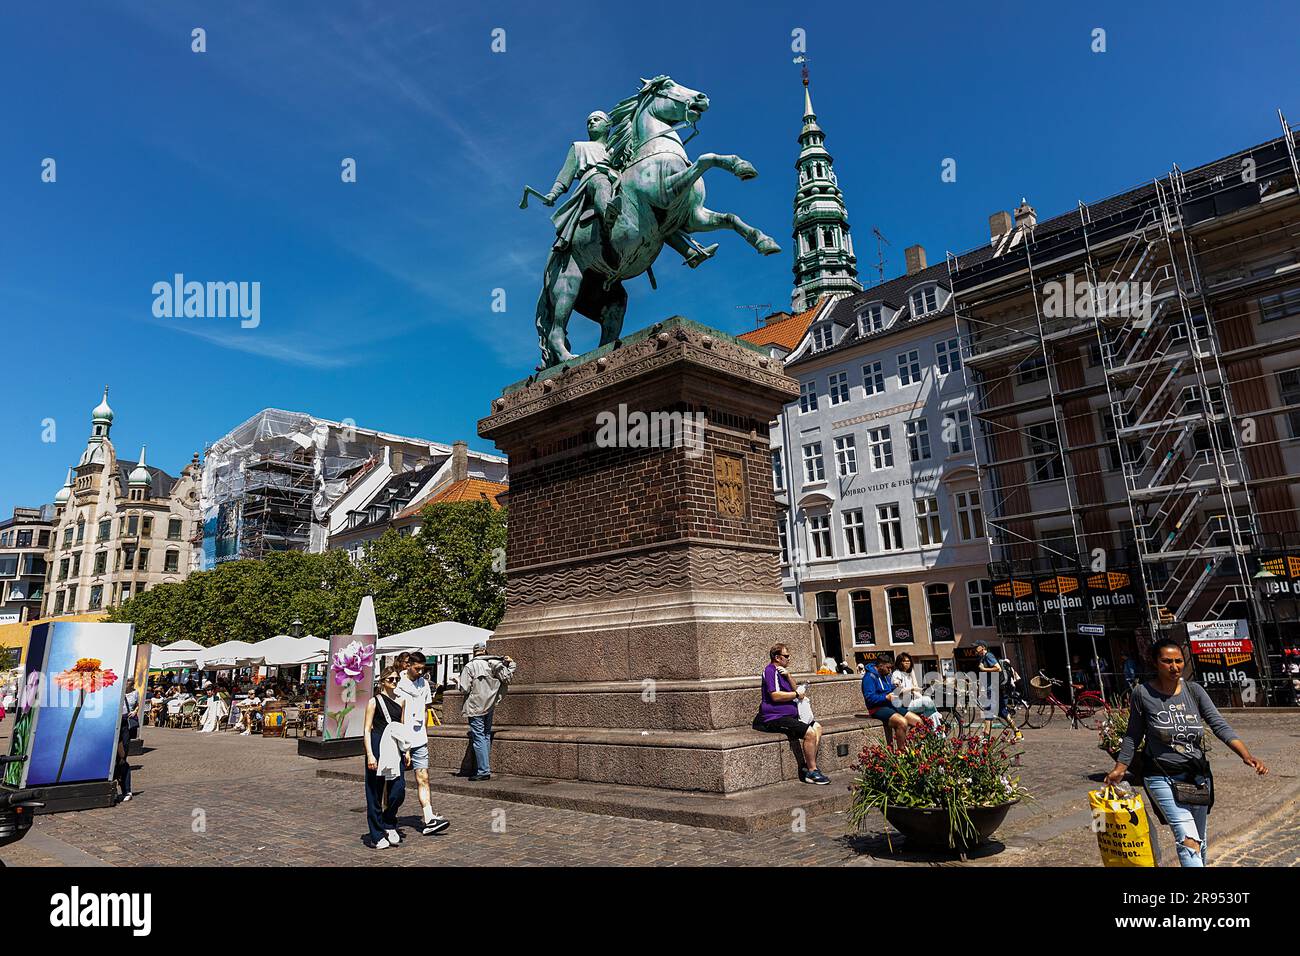 COPENHAGUE: La statue équestre avec l'évêque guerrier médiéval ancien, Absalon, sur la place Højbro vue sur 4 juin 2023 à Copenhague, Danemark. Absal Banque D'Images